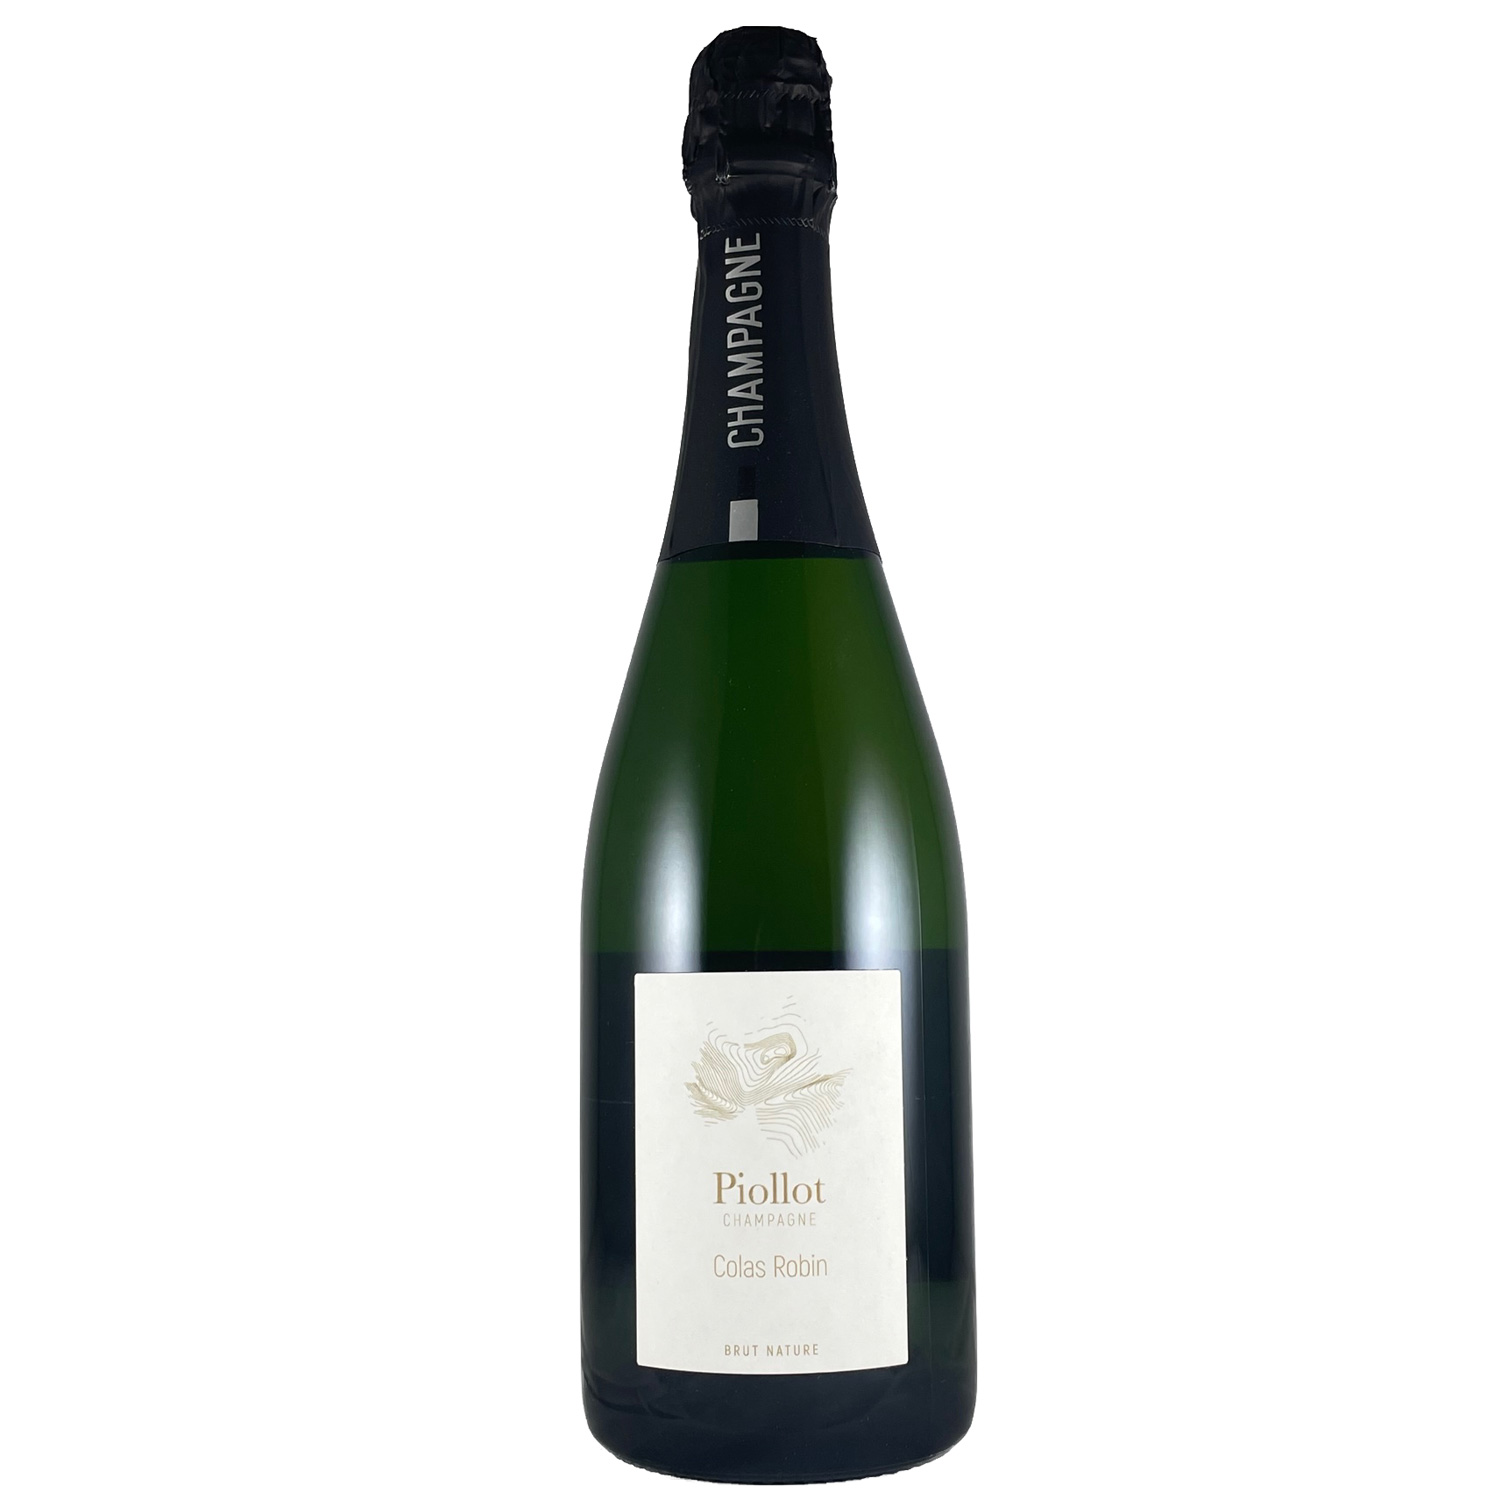 Champagne Piollot: Colas Robin - Brut Nature - 2014